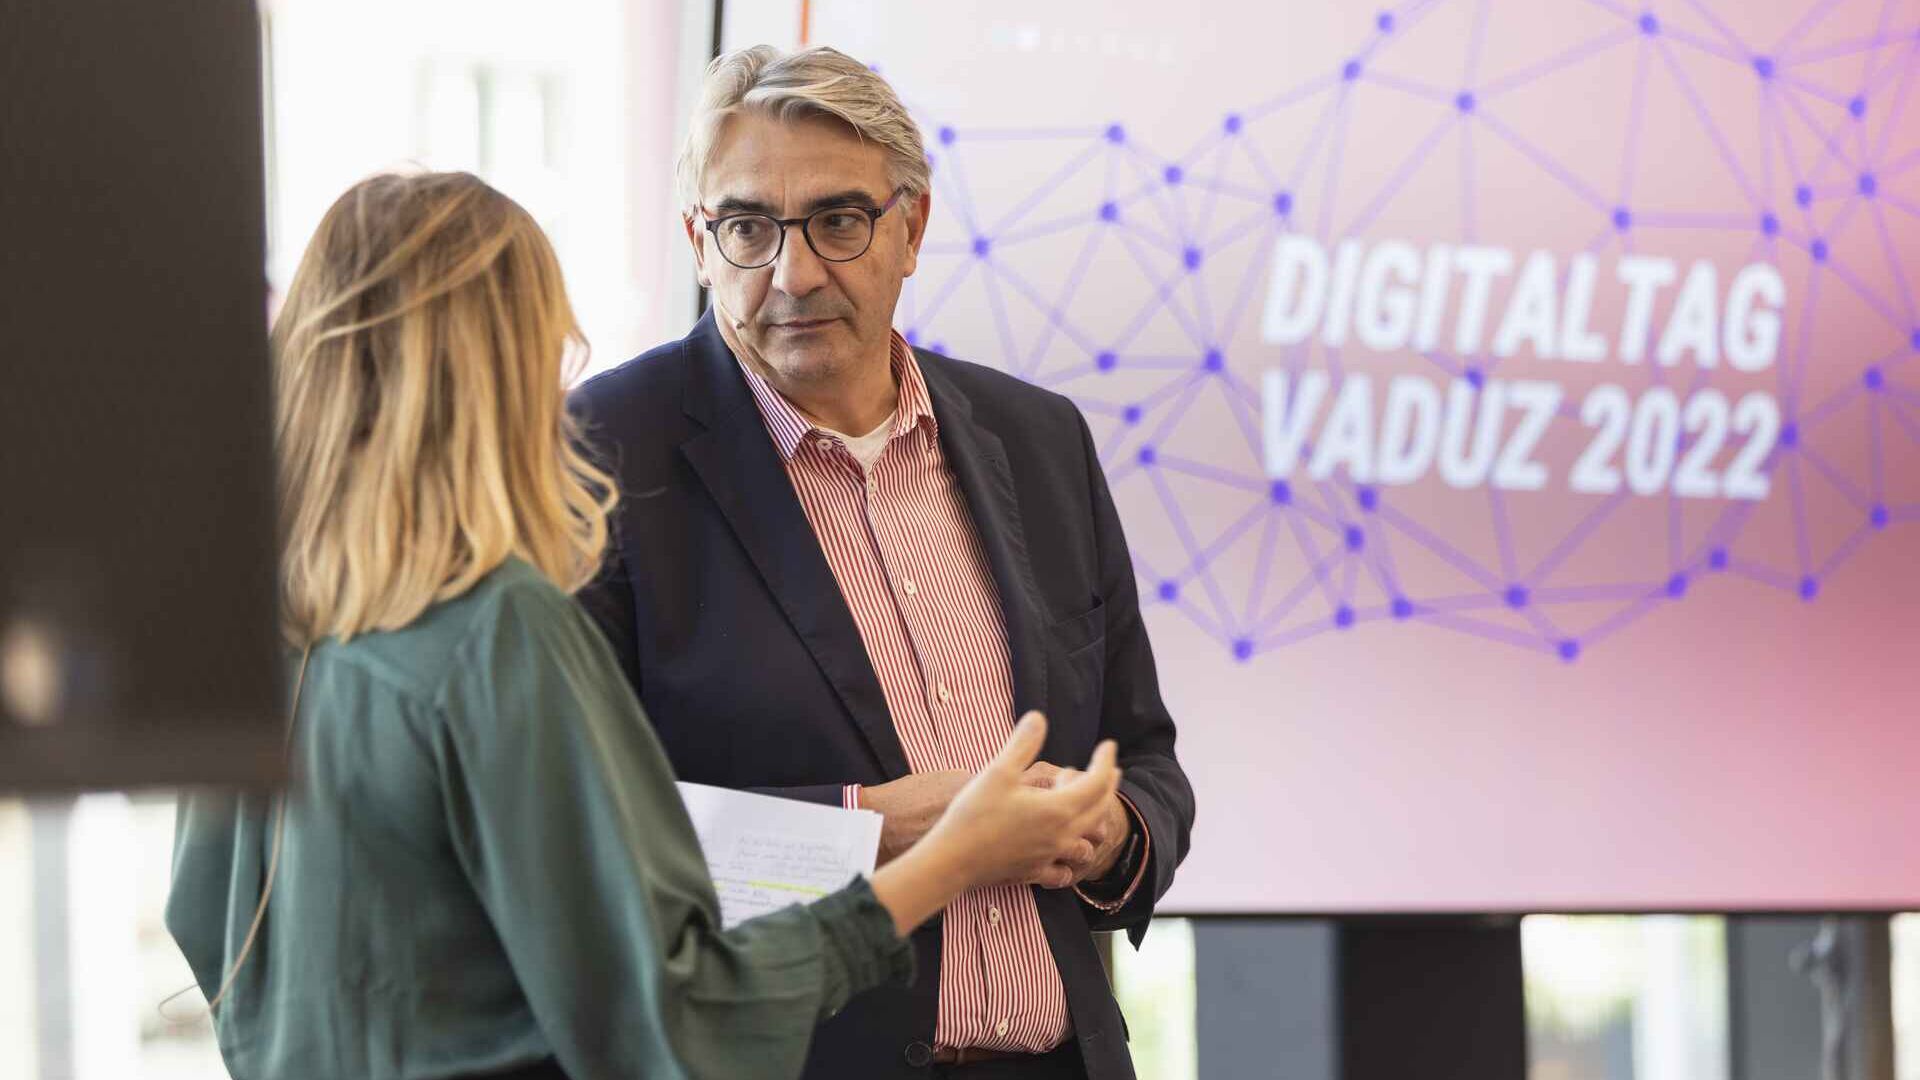 "Digitaltag Vaduz"는 15년 2022월 XNUMX일 토요일 리히텐슈타인 공국 수도의 미술관에서 환영을 받았습니다.